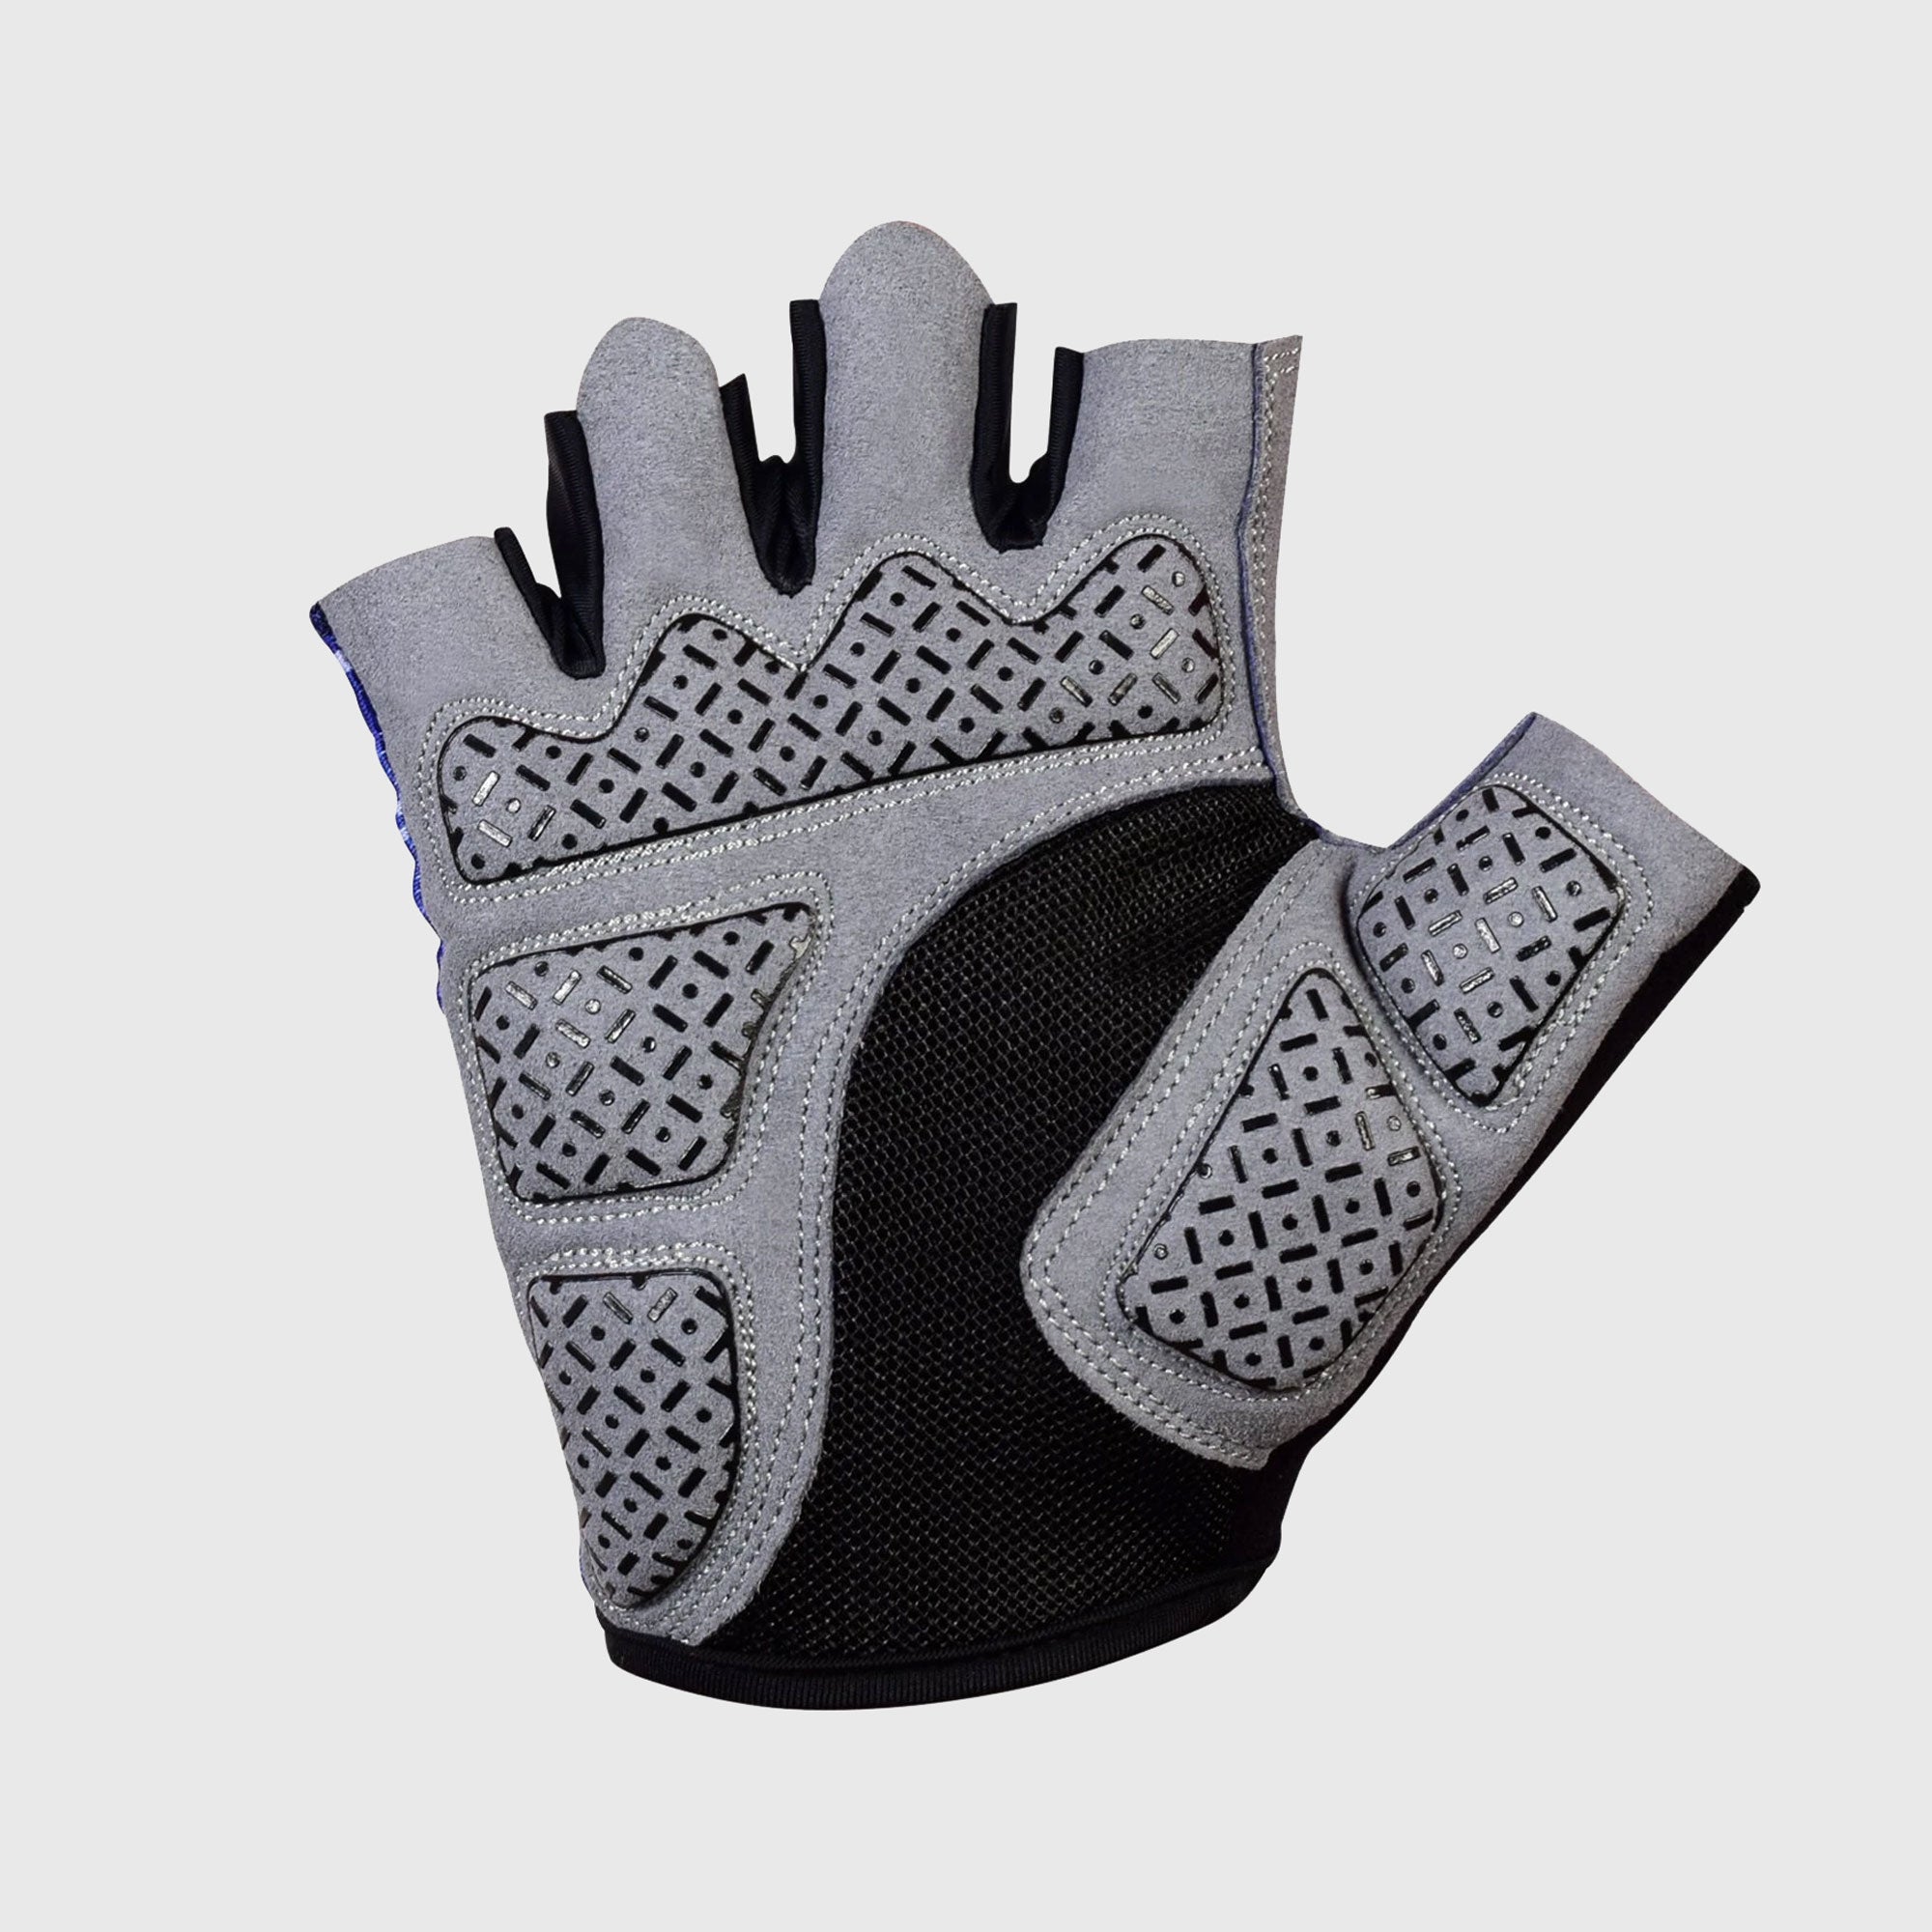 Fdx Green Short Finger Cycling Gloves for Summer MTB Road Bike fingerless, anti slip & Breathable - All Day